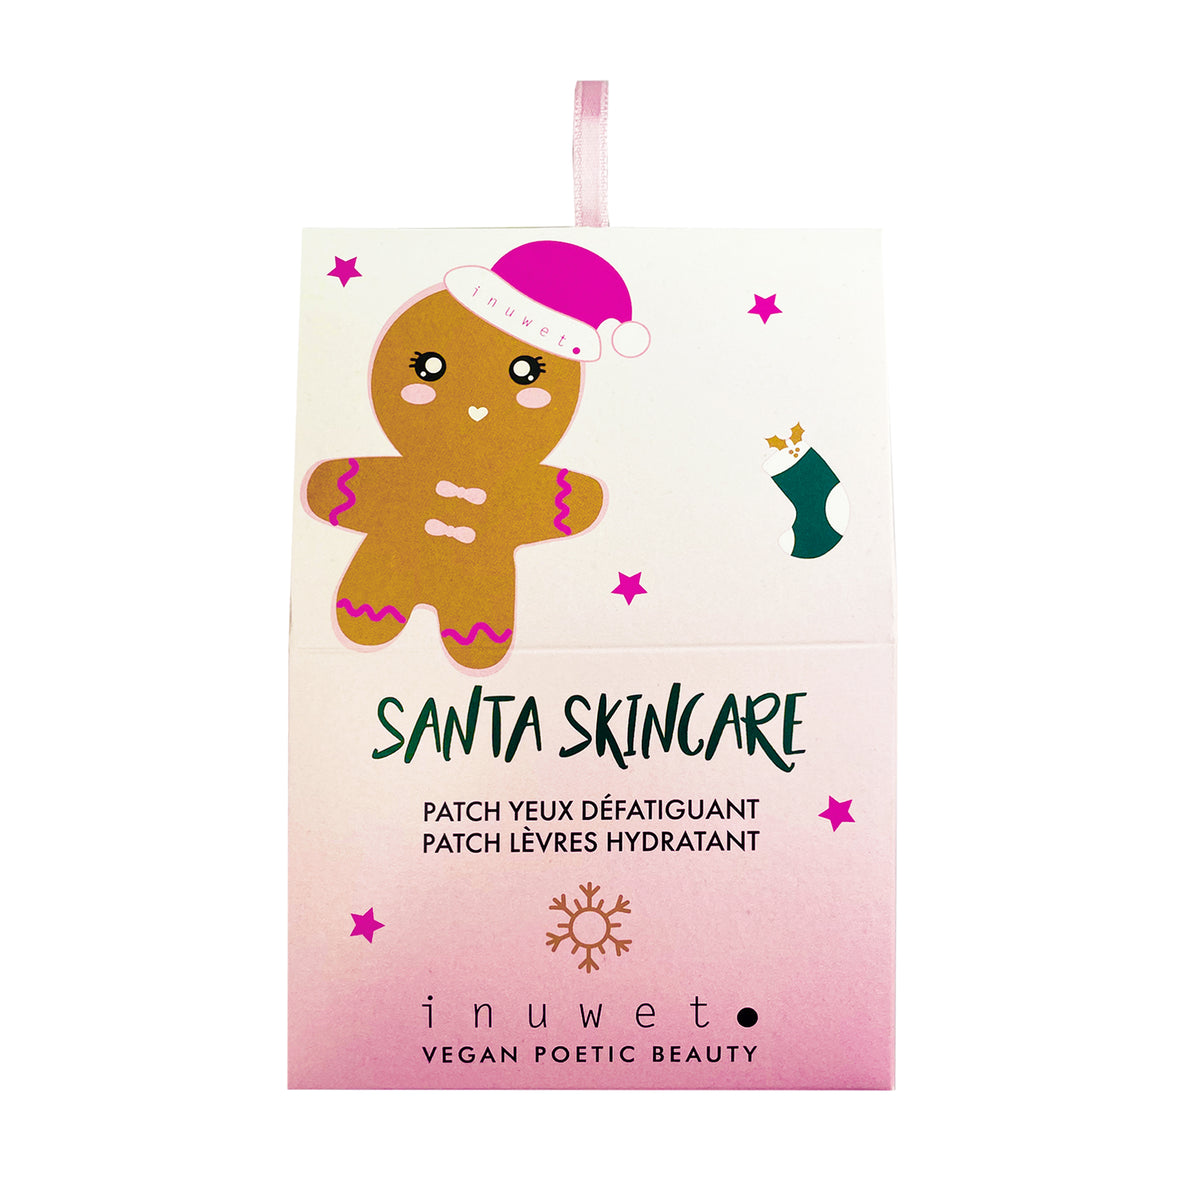 Santa Skincare - Patch yeux & lèvres